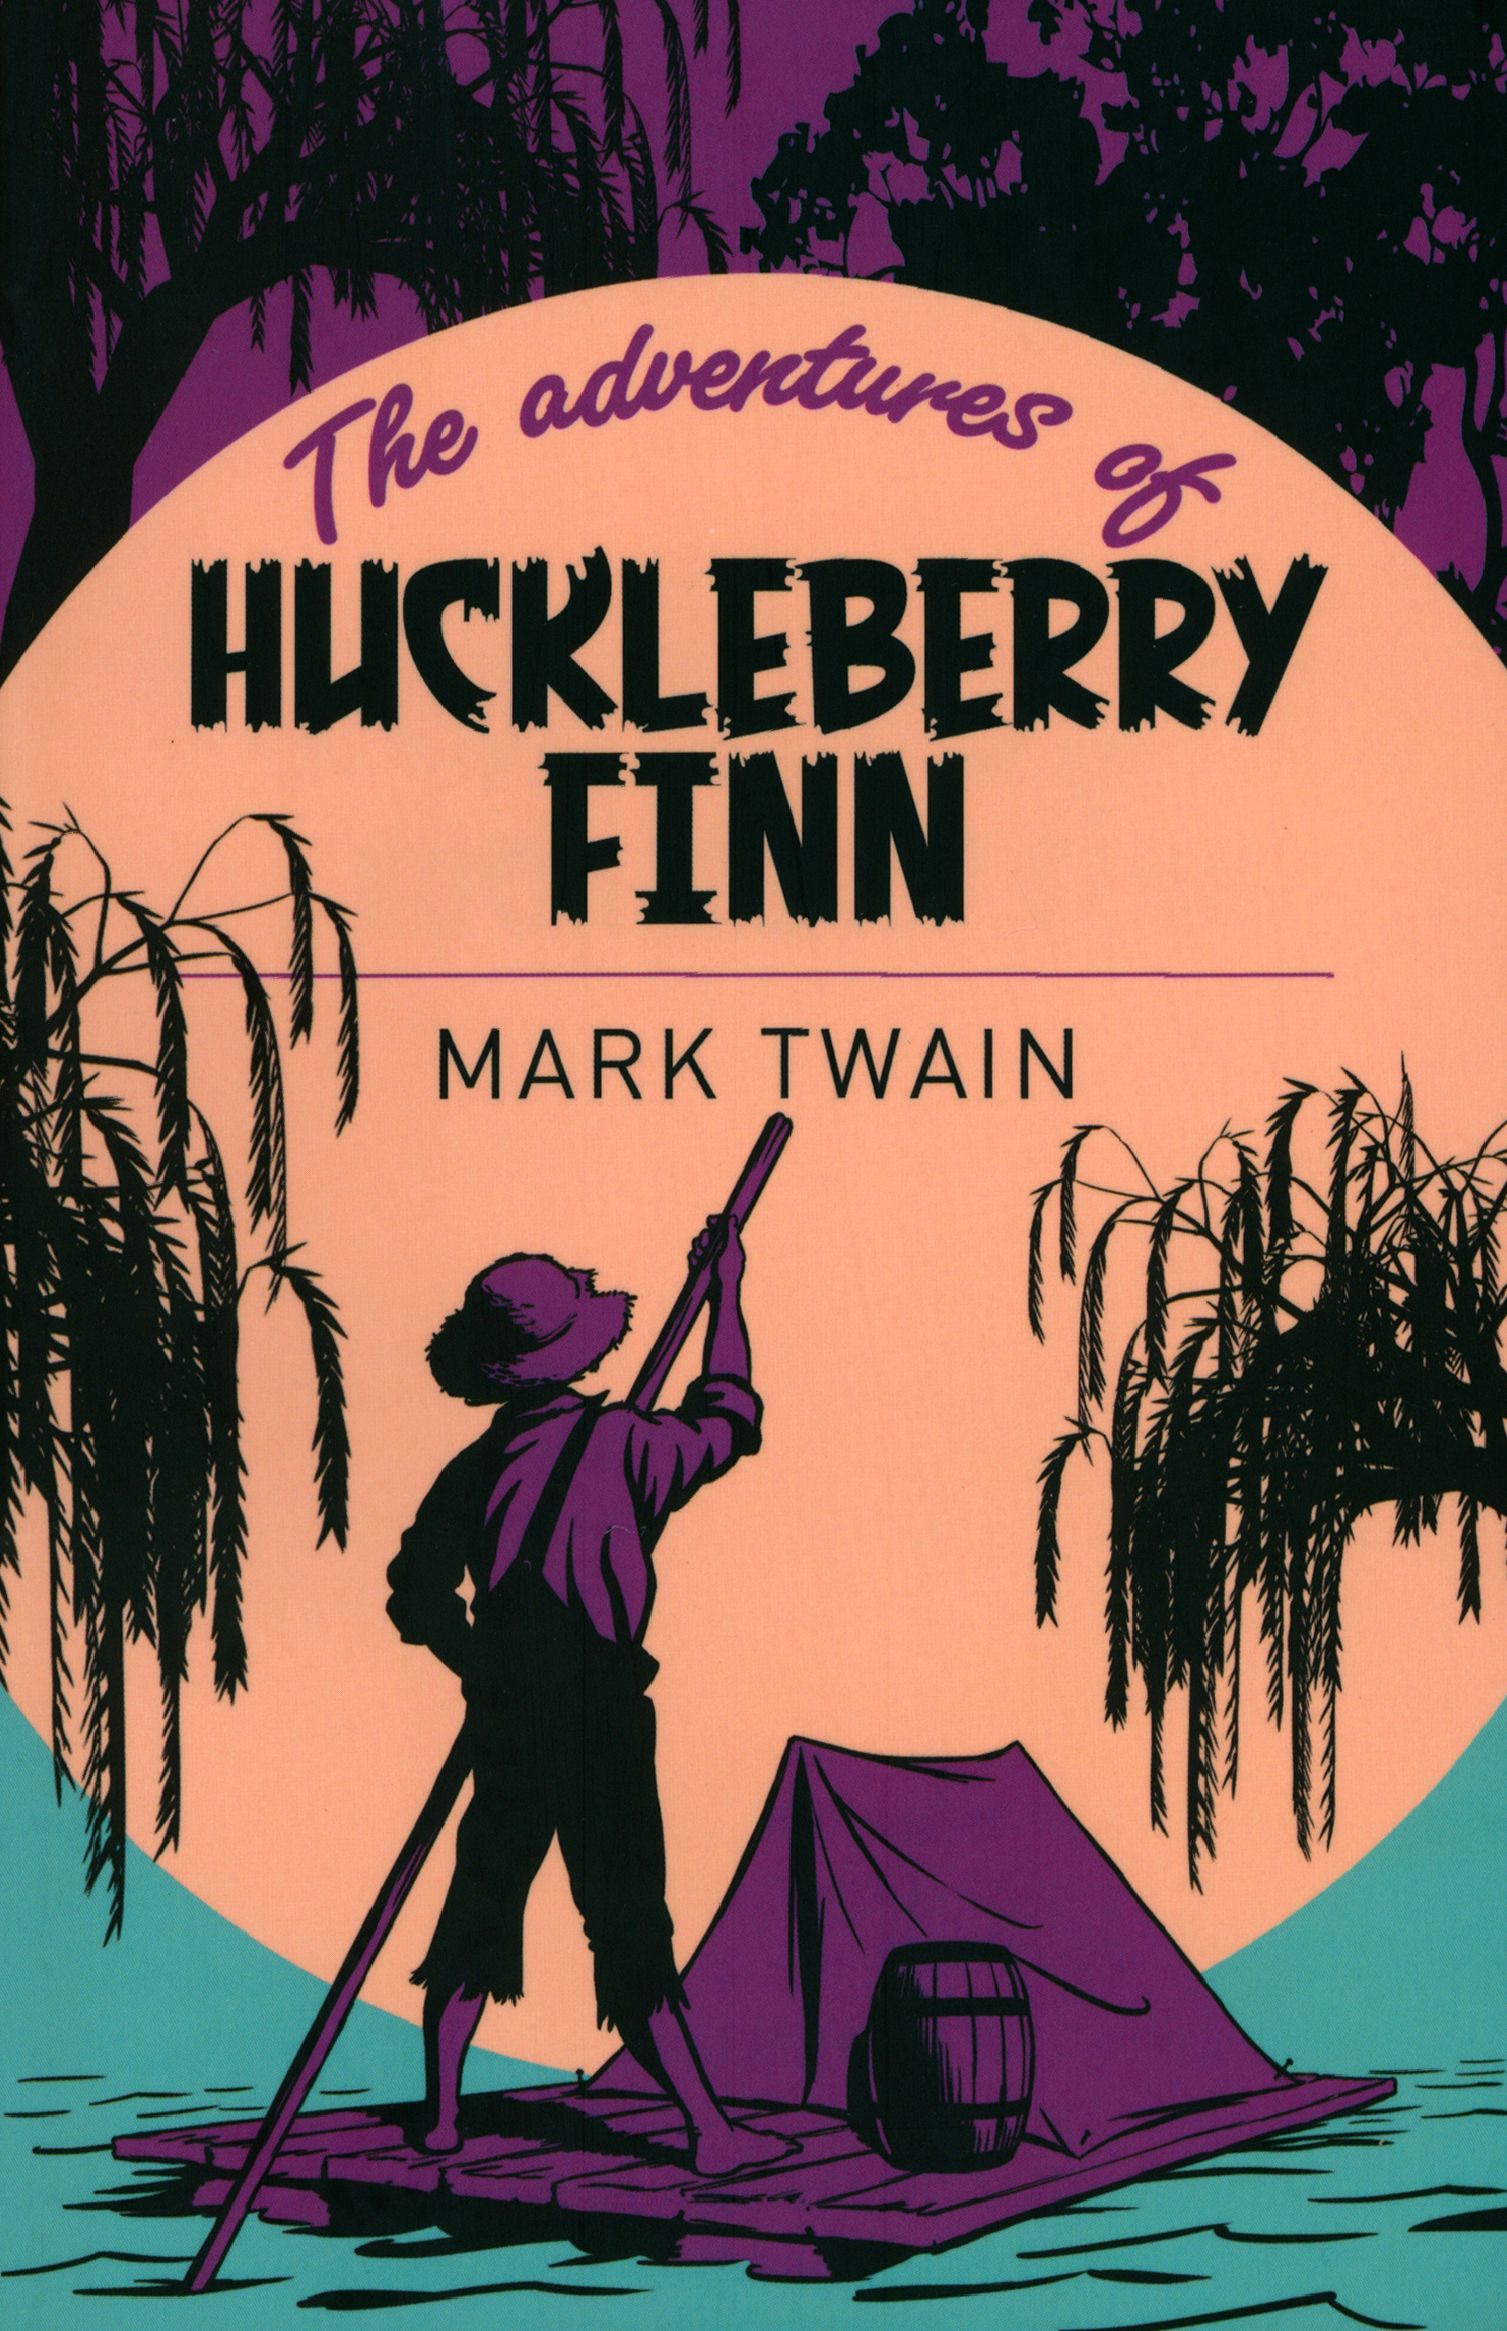 Adventures of Huckleberry Finn. Mark Twain Huckleberry Finn. Huckleberry Finn book. The adventures of huckleberry finn mark twain